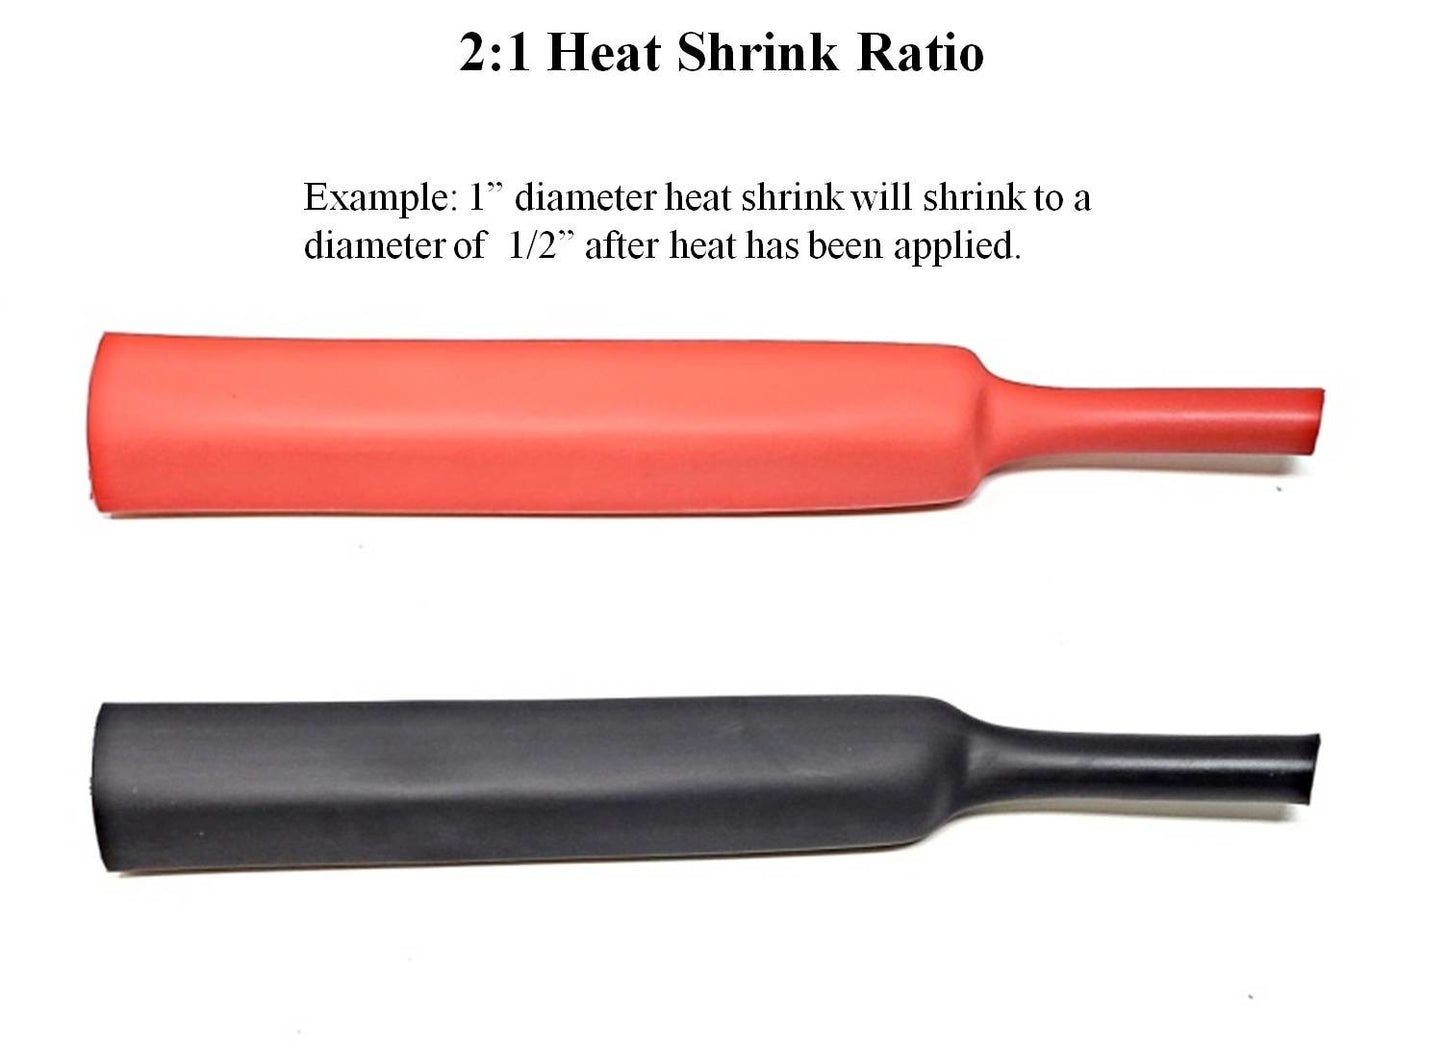 Black 2:1 Polyolefin Heat Shrink Tube Tubing - Various Inner Diameter Options Available